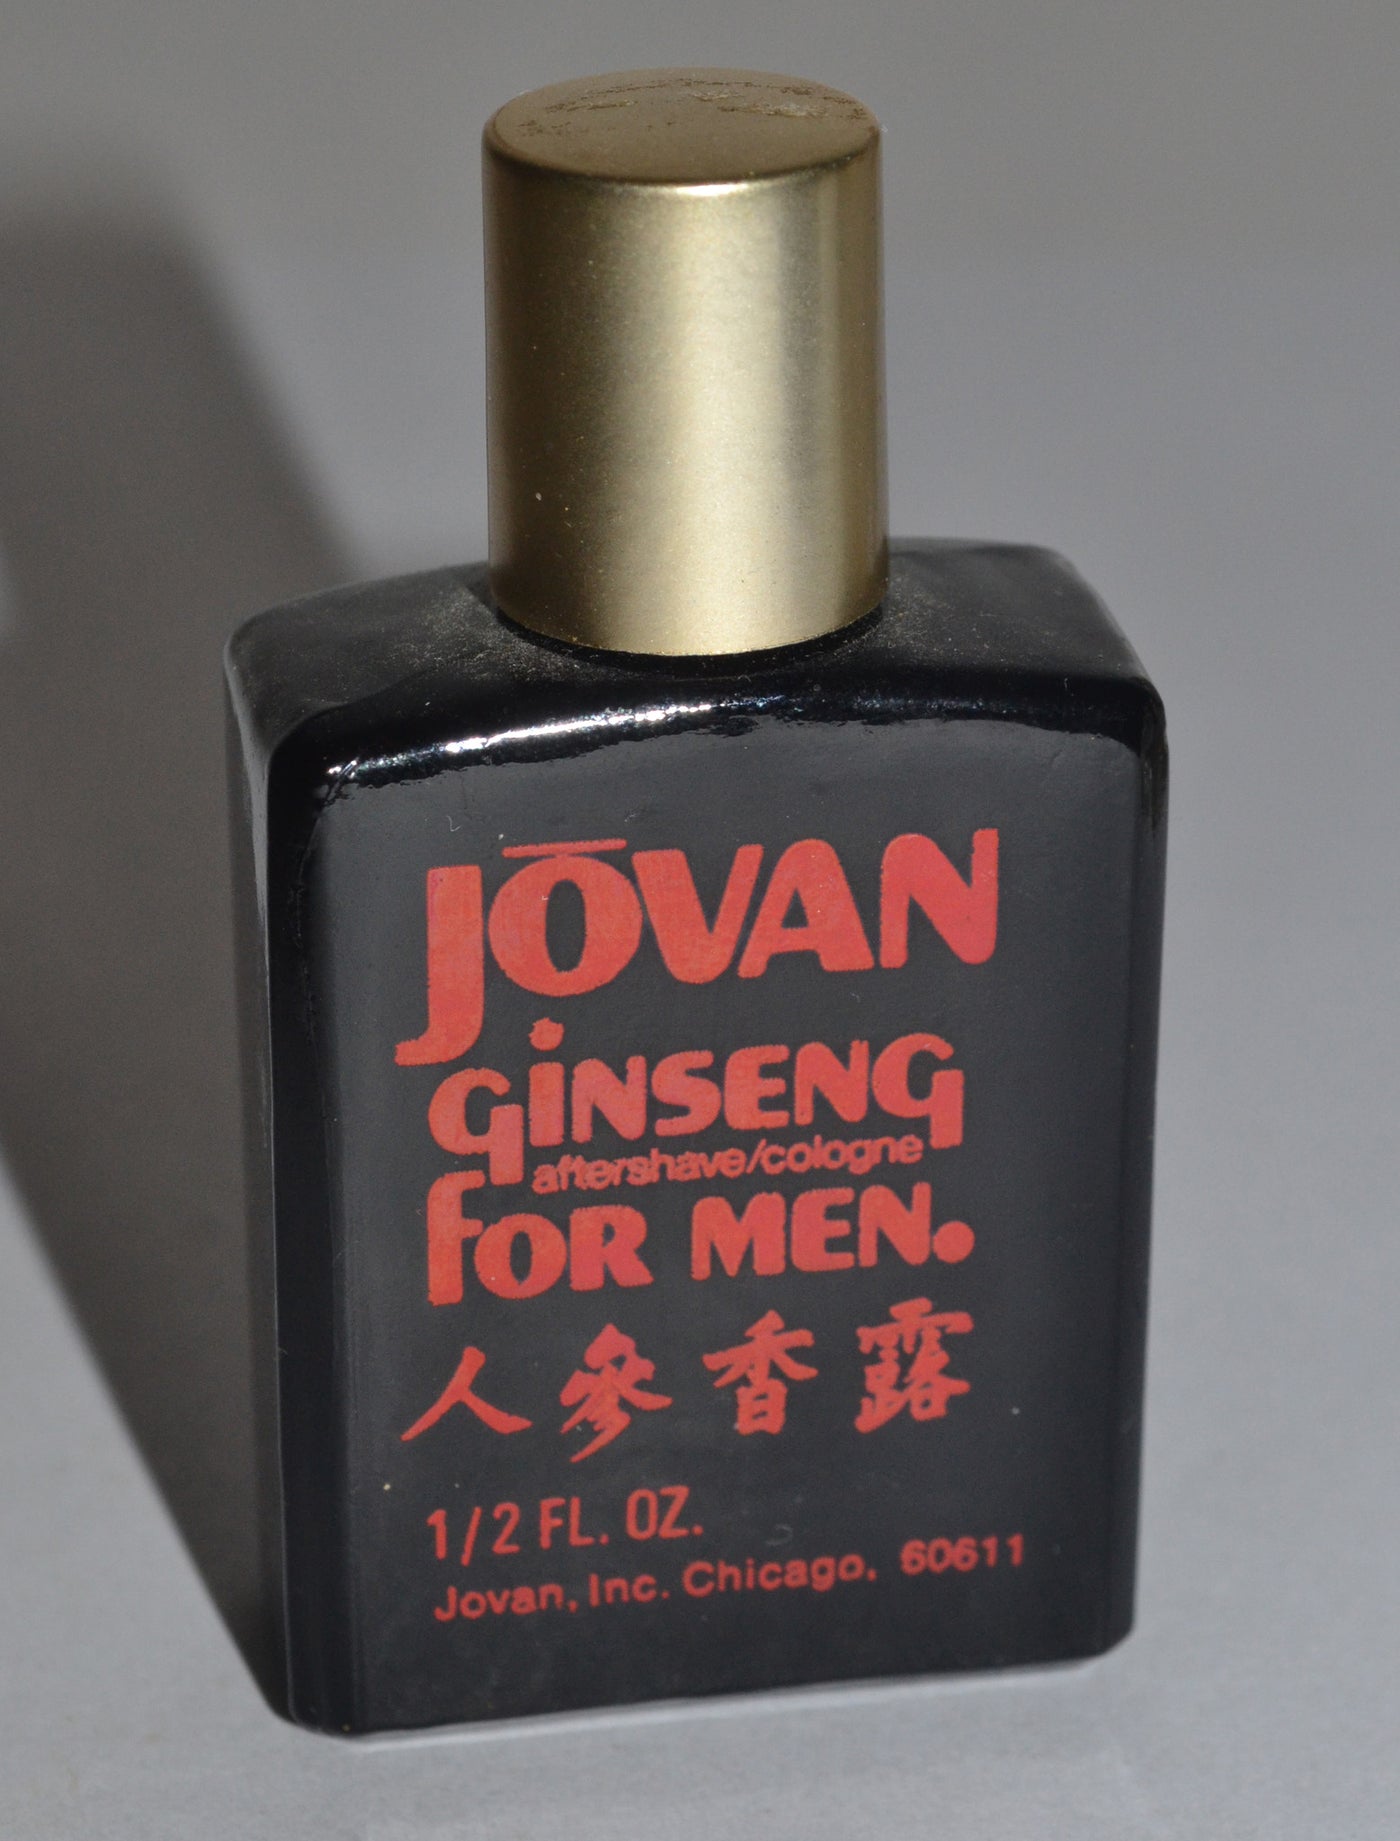 Jovan Ginseng For Men Cologne/Aftershave